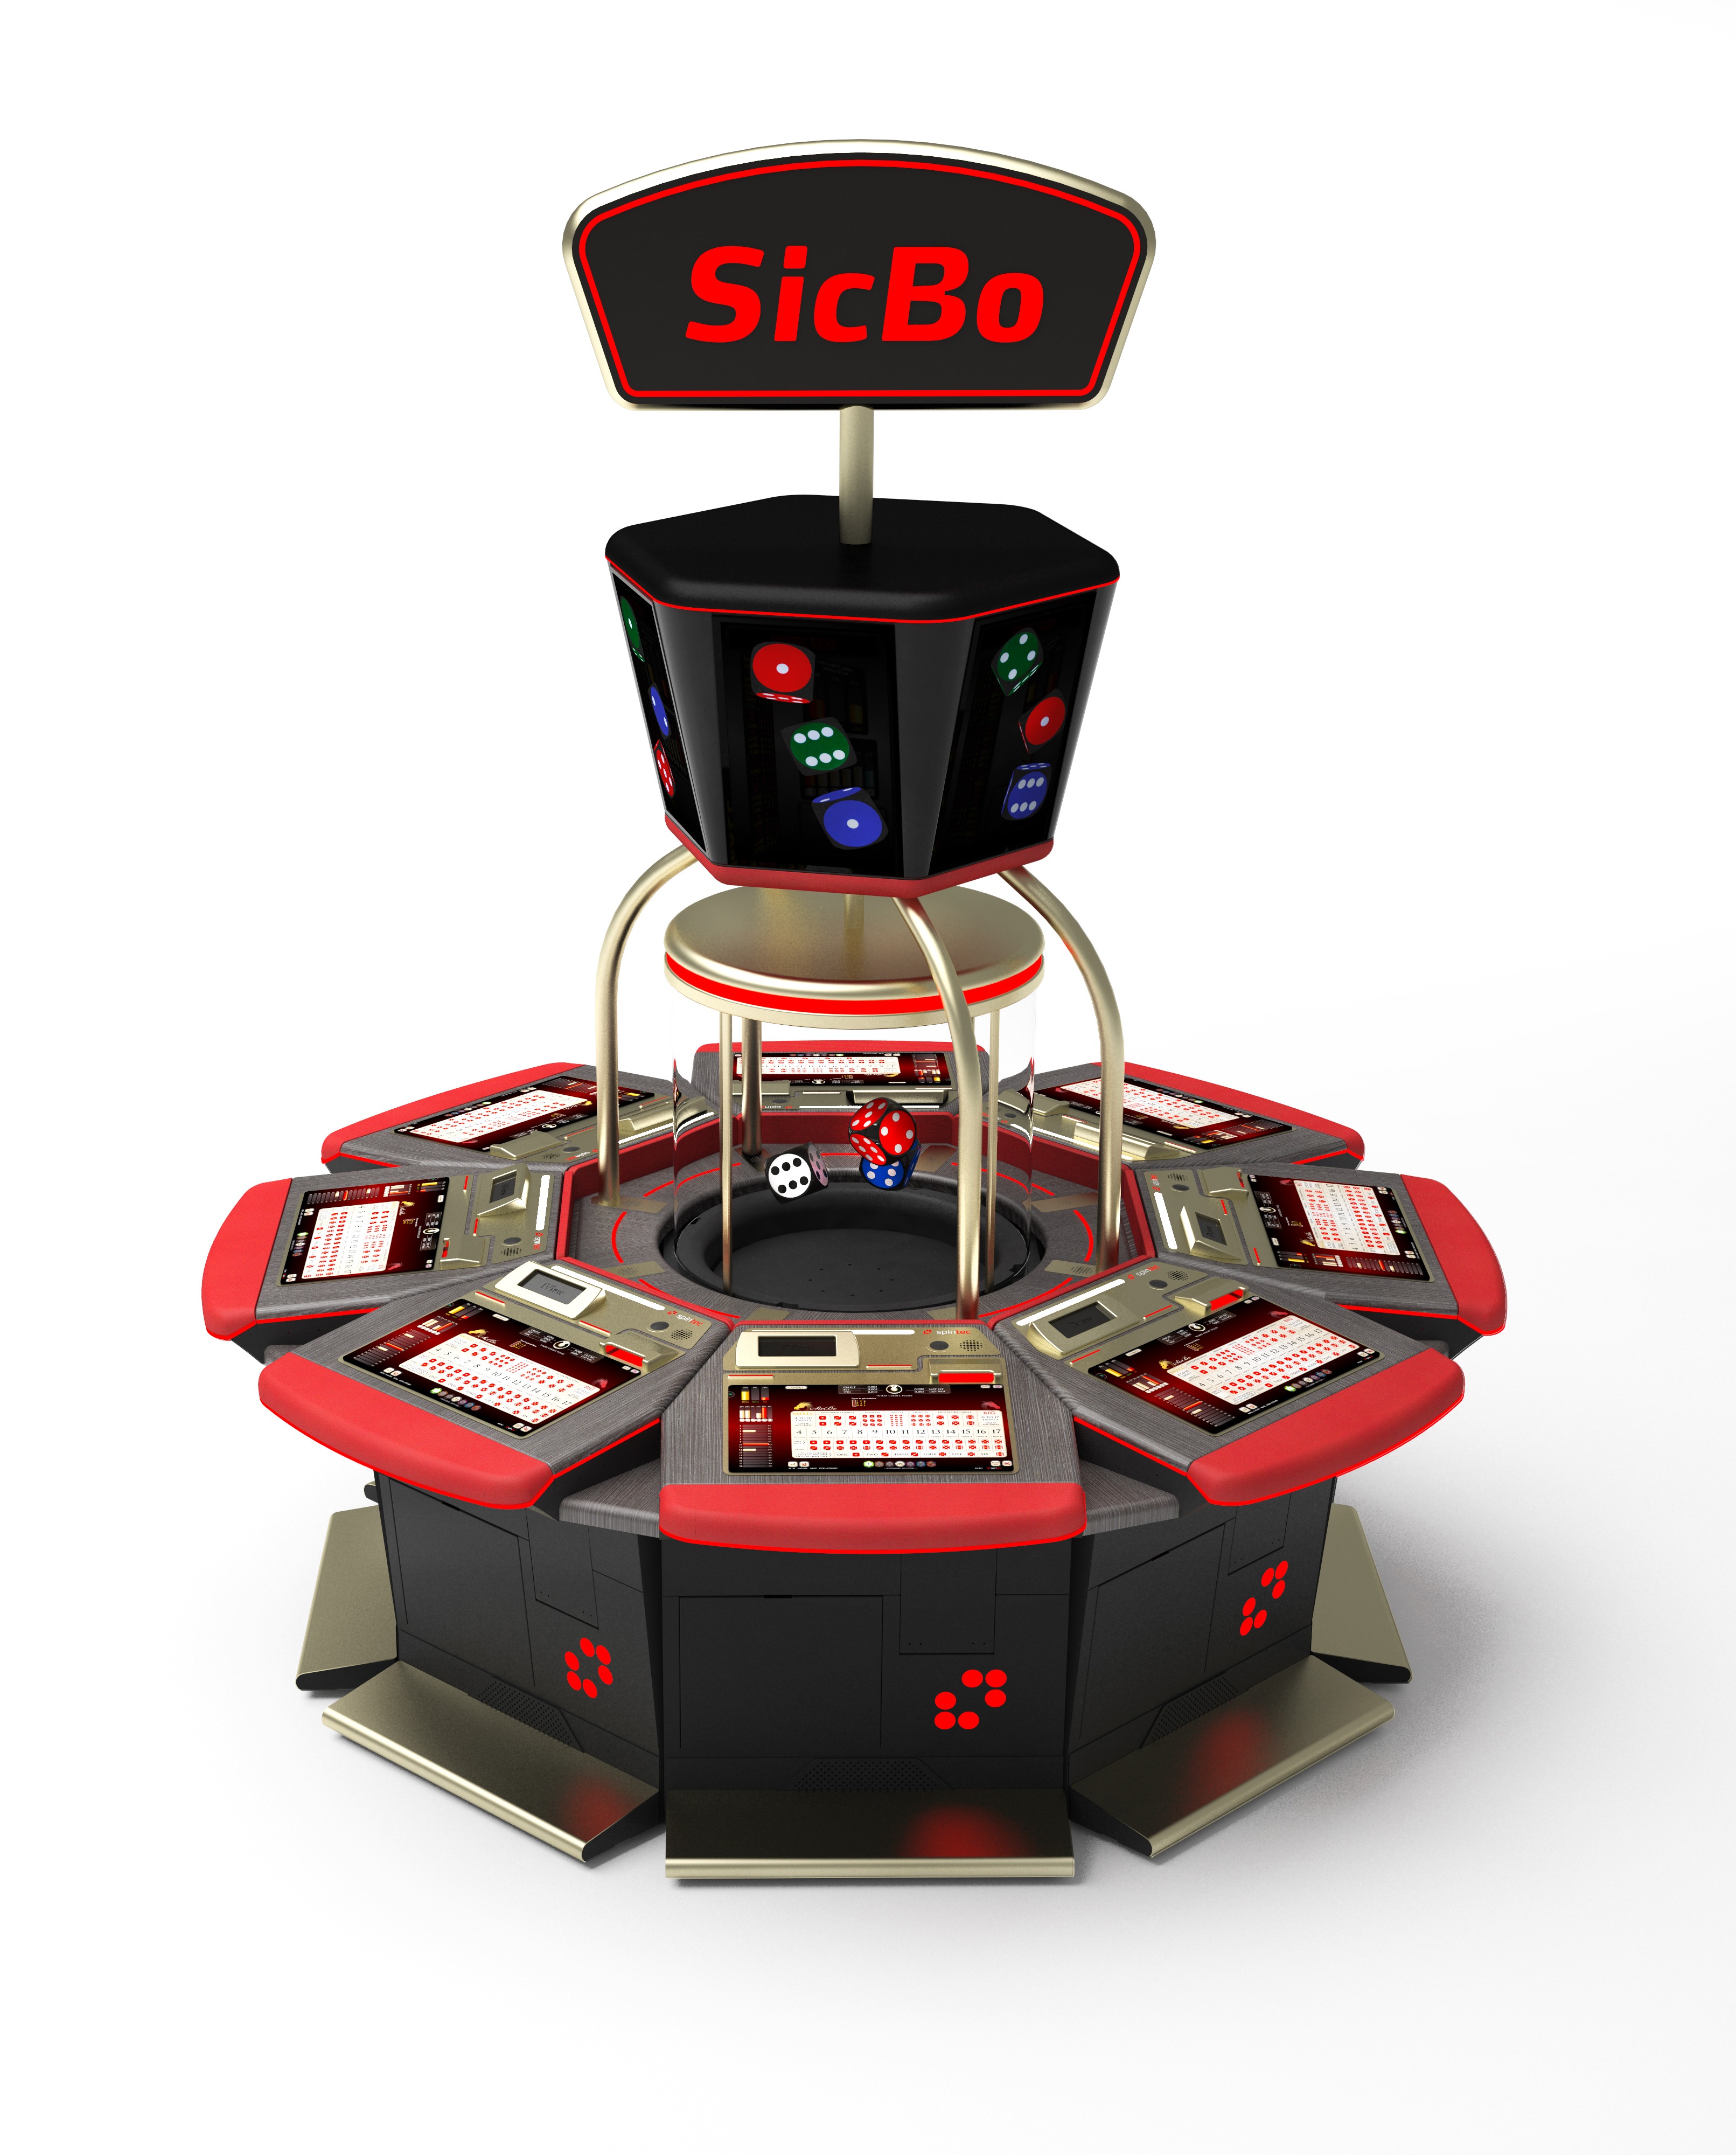 Sicbo Trò chơi đơn giản nhưng hấp dẫn của người chơi cá độ